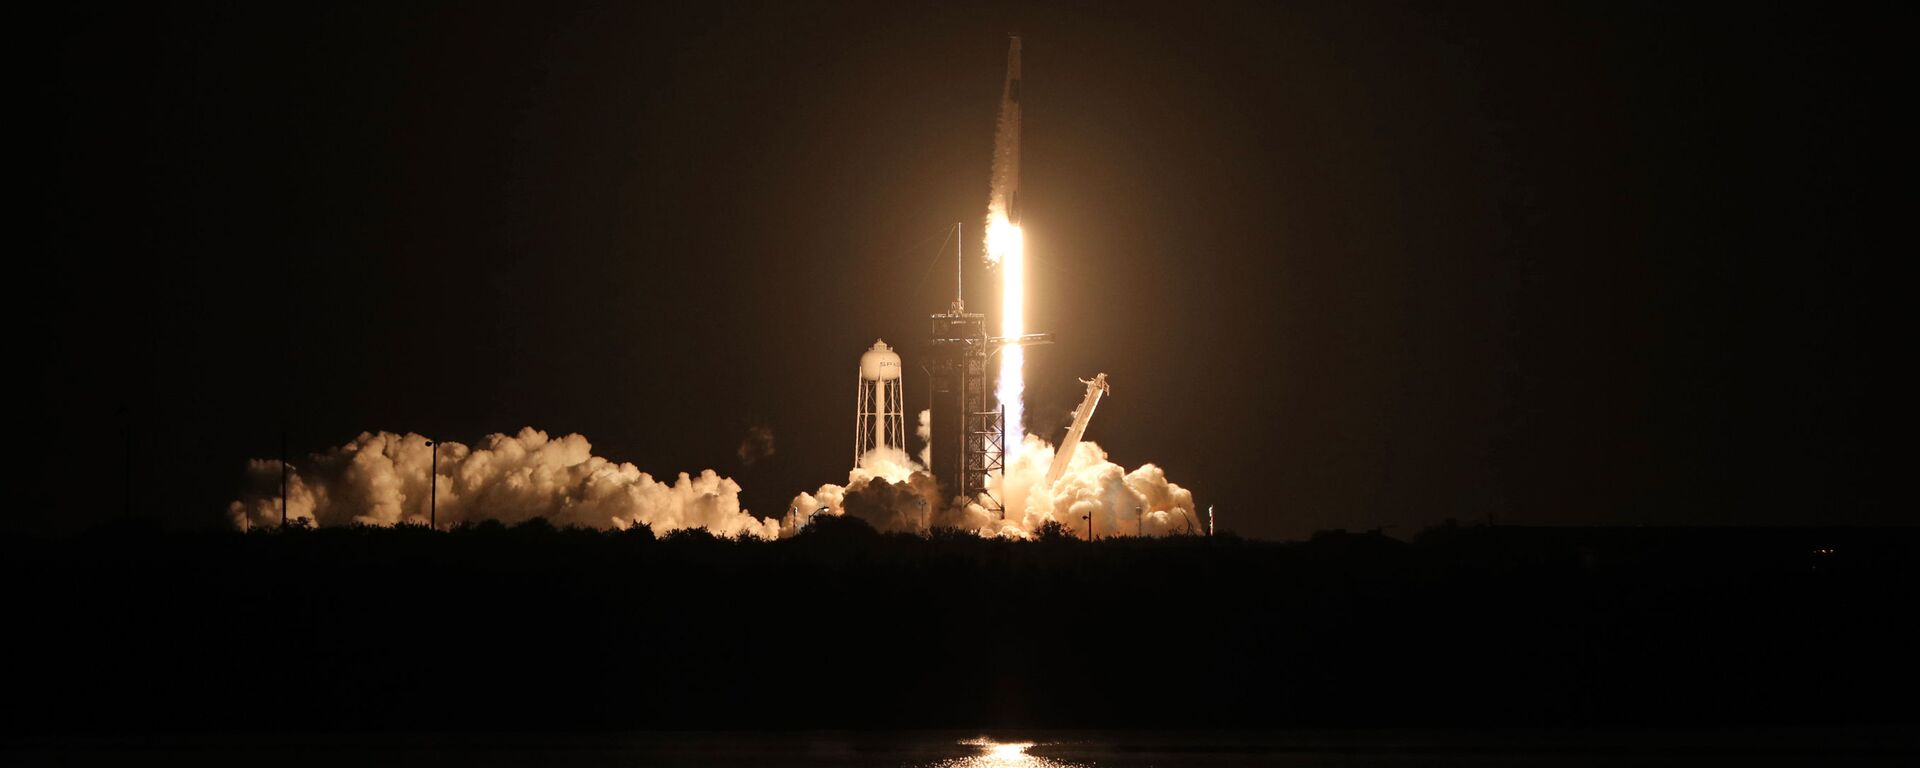 إطلاق مركبة سبيس إكس والتي تحمل اسم كرو دراغون عن طريق صاروخ فالكون 9، من مركز كينيدي للفضاء التابع لناسا في كيب كانافيرال بولاية فلوريدا، الولايات المتحدة 16 نوفمبر 2020 - سبوتنيك عربي, 1920, 28.01.2022